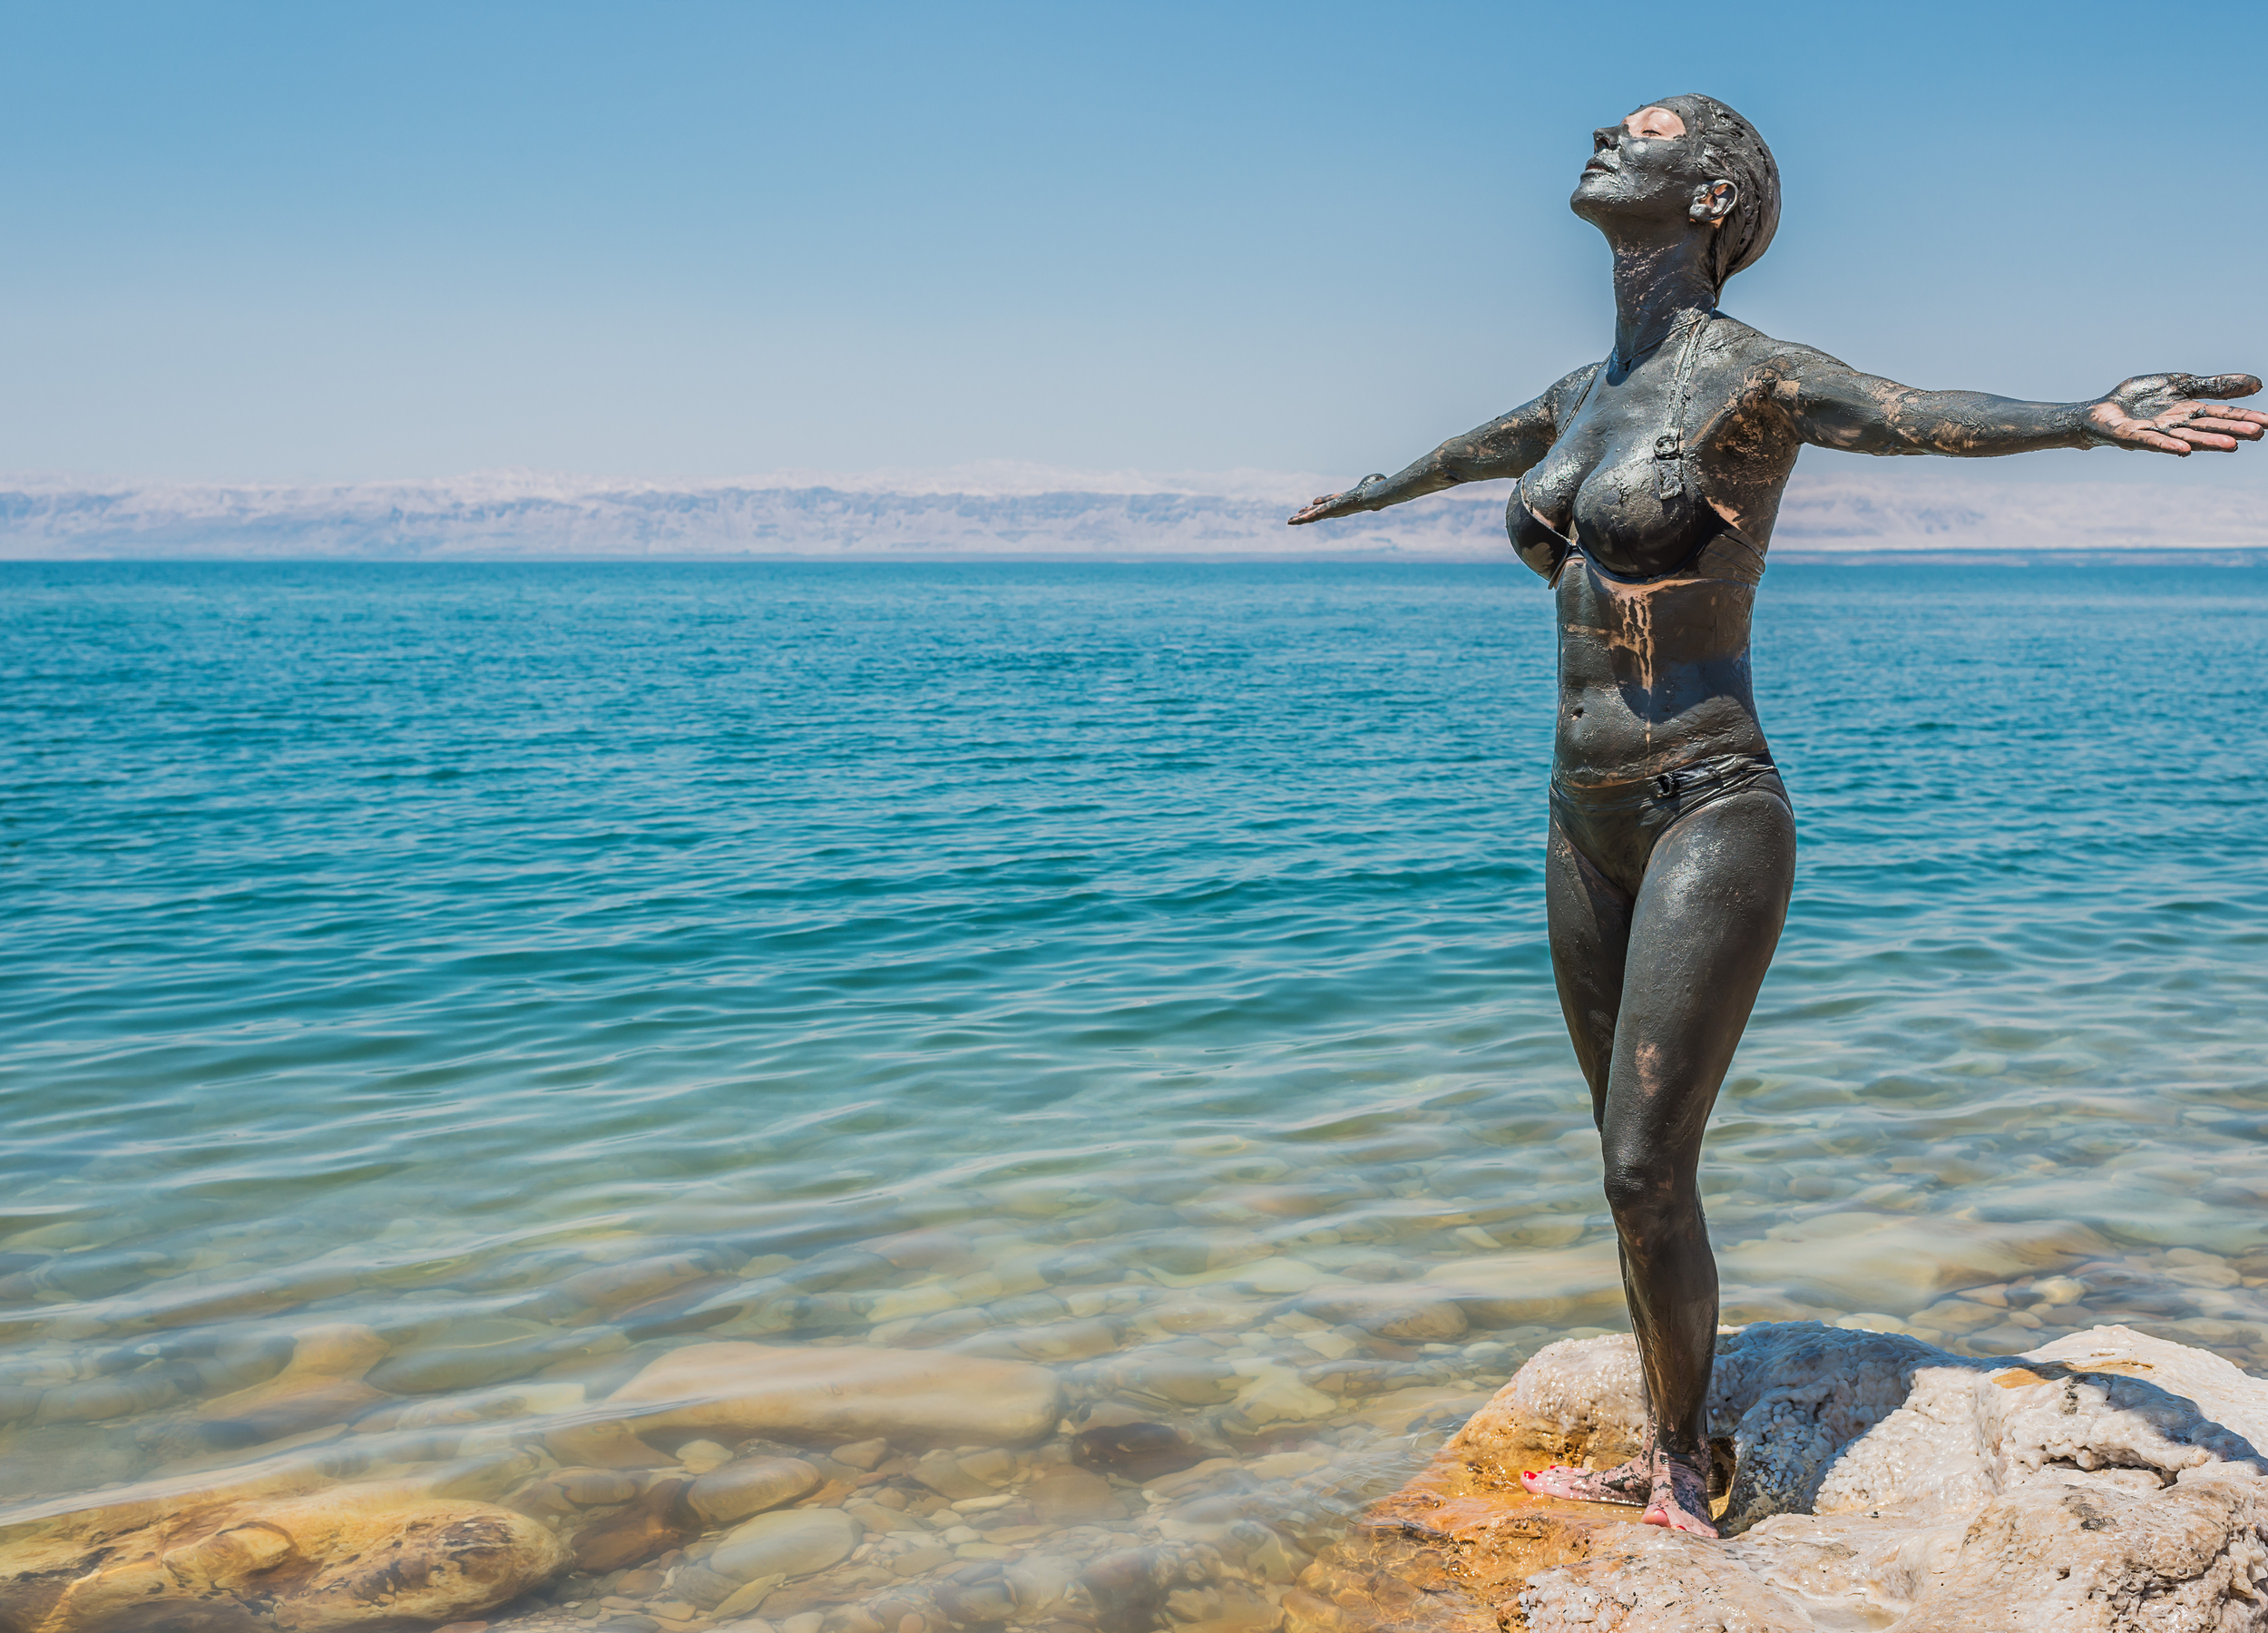 Day 10: Dead Sea